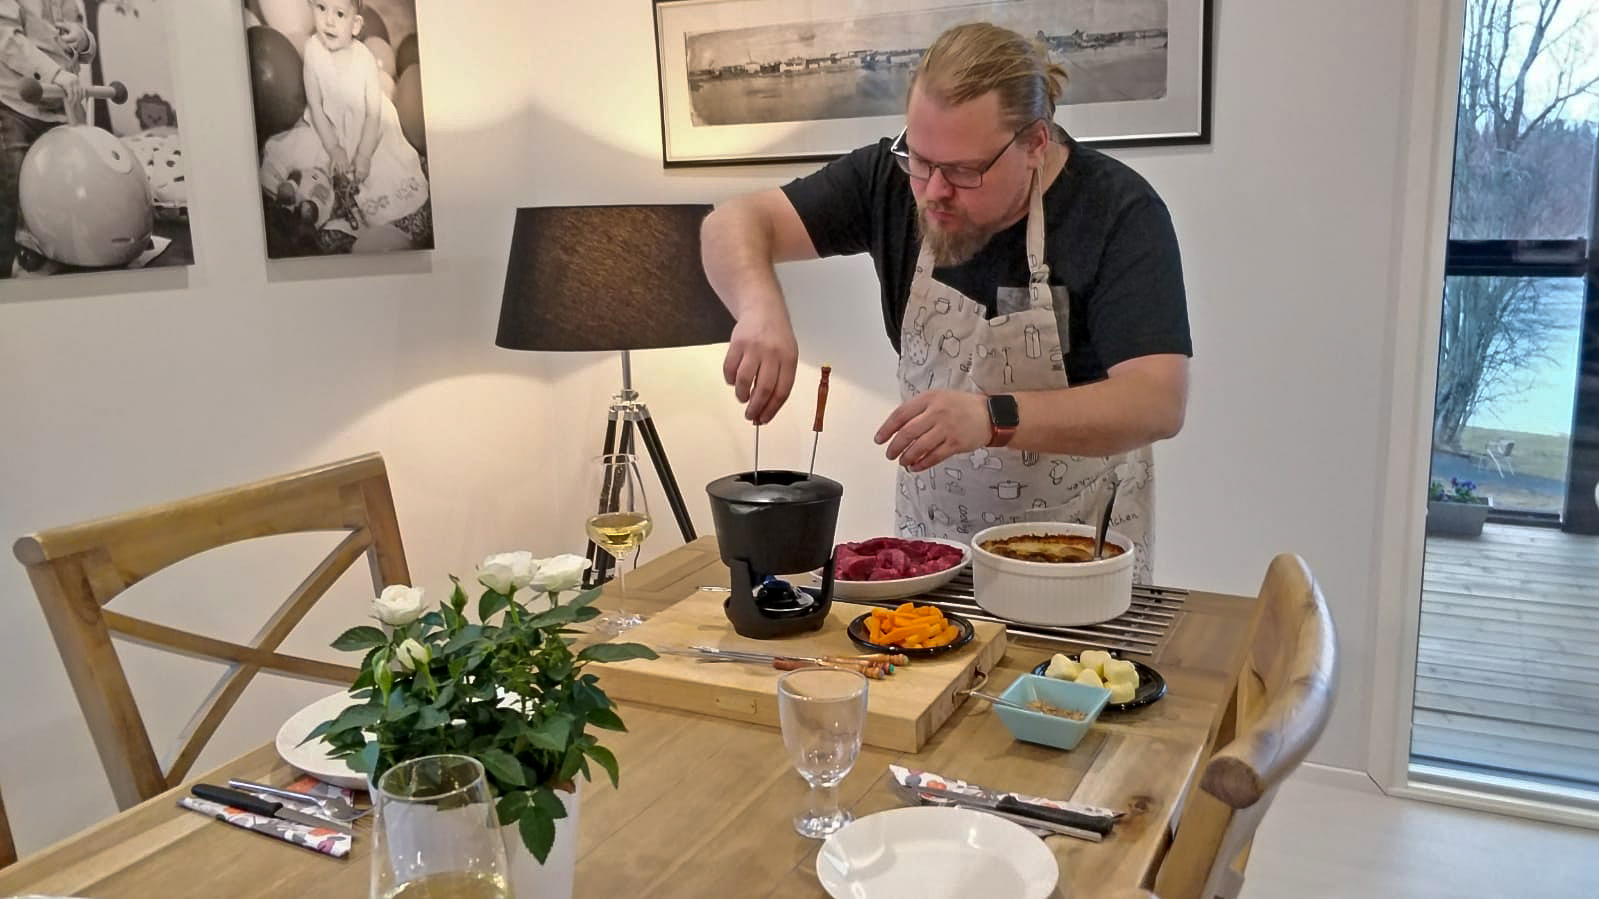 Oamkissa opiskeleva Henri Huttunen pitää ruoanlaitosta ja haluaa tarjota muillekin mahdollisuuden nauttia suomalaisen ruoan uniikkiudesta.